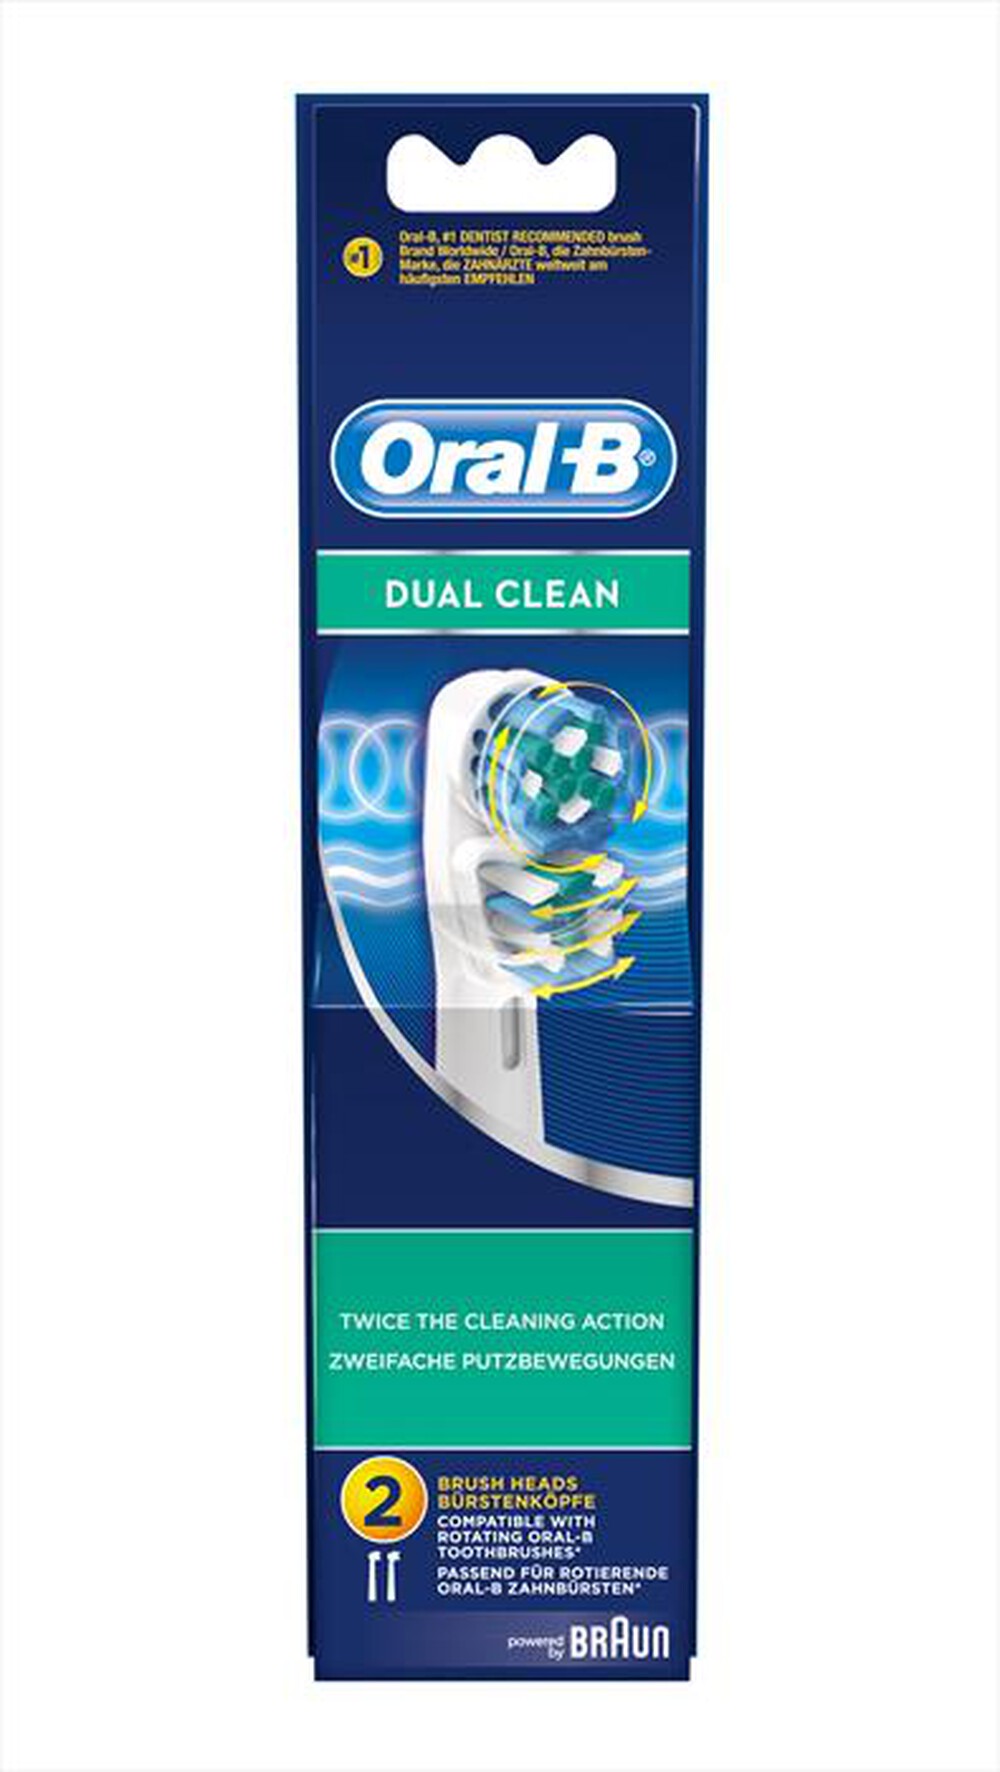 "ORAL-B - EB 417-3 DualClean"